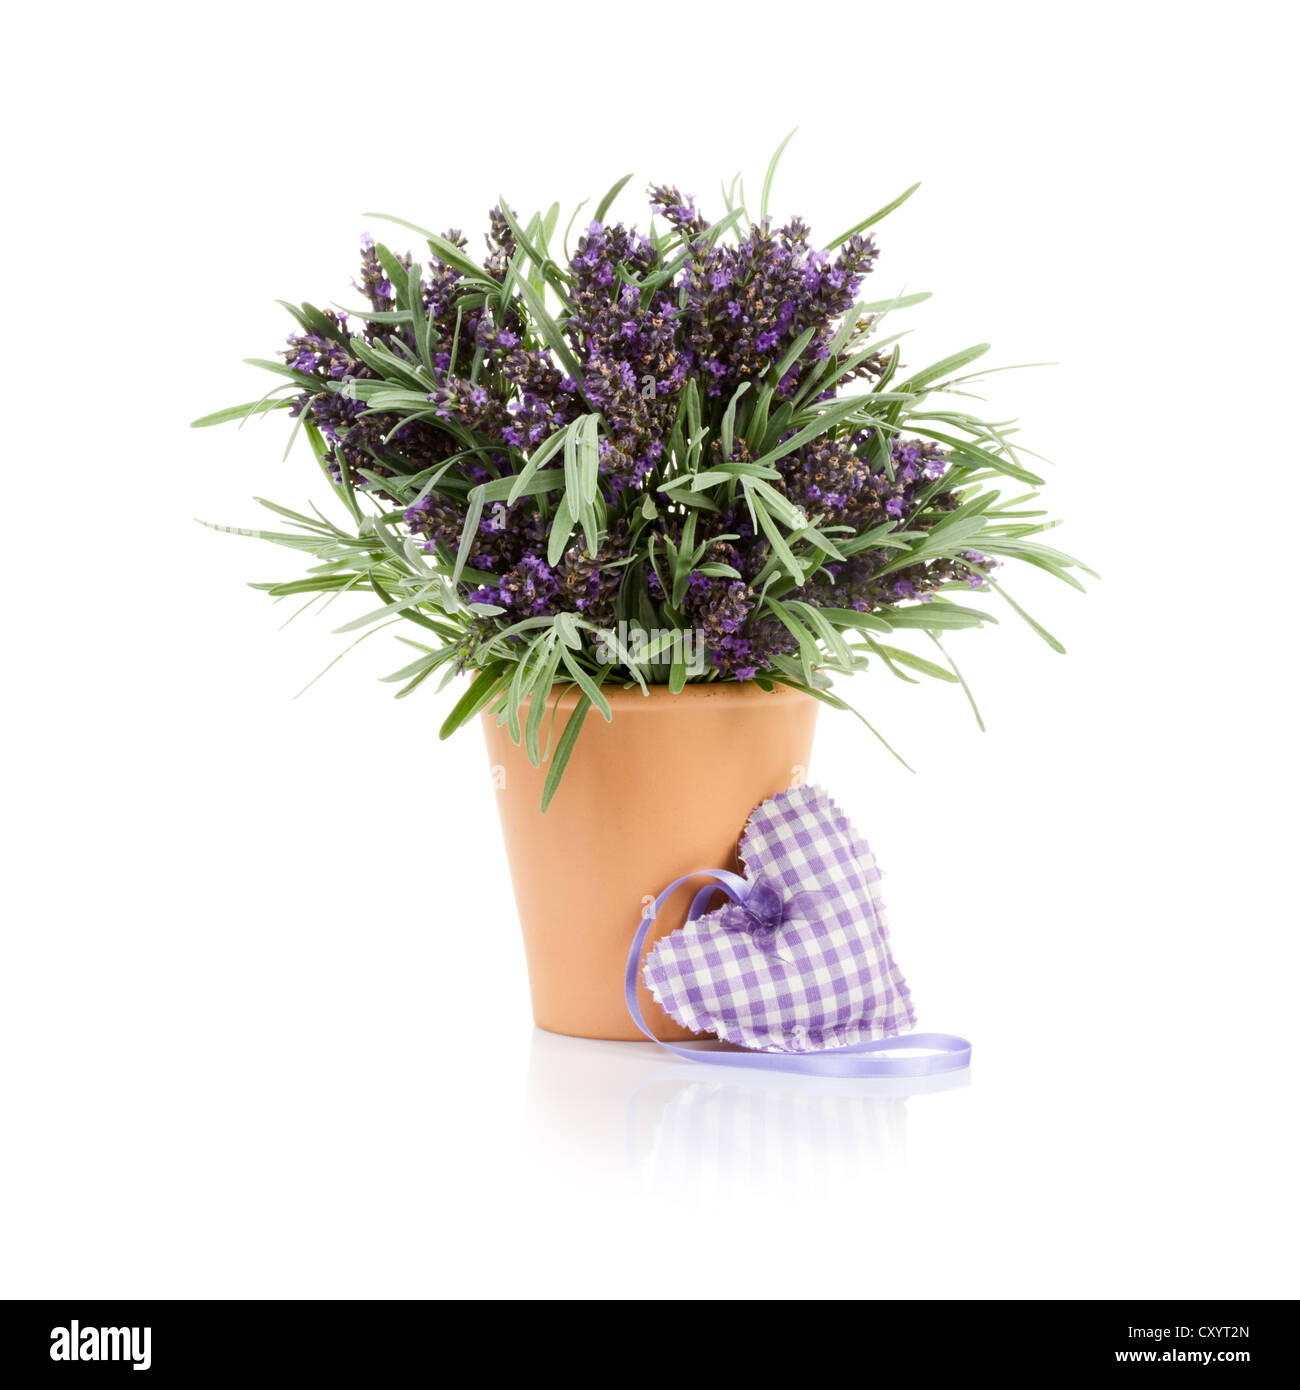 Blumentopf mit Lavendel und Stoff Herz auf weißem Hintergrund  Stockfotografie - Alamy